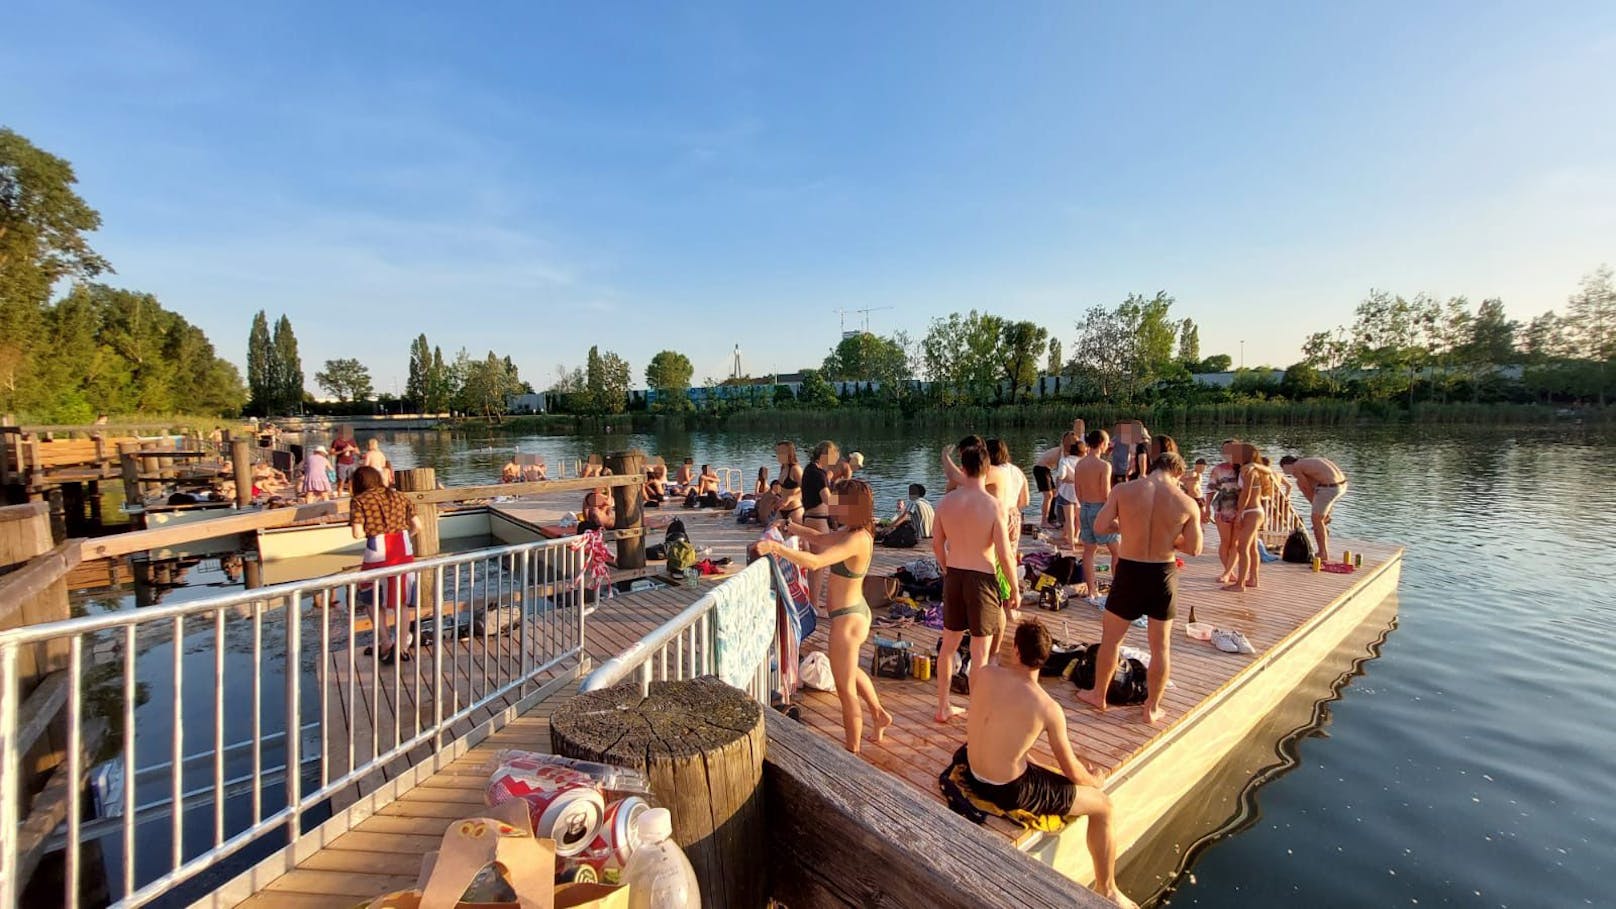 Am Montag trafen sich viele junge Menschen zum Schwimmen und Party machen auf der Alten Donau.